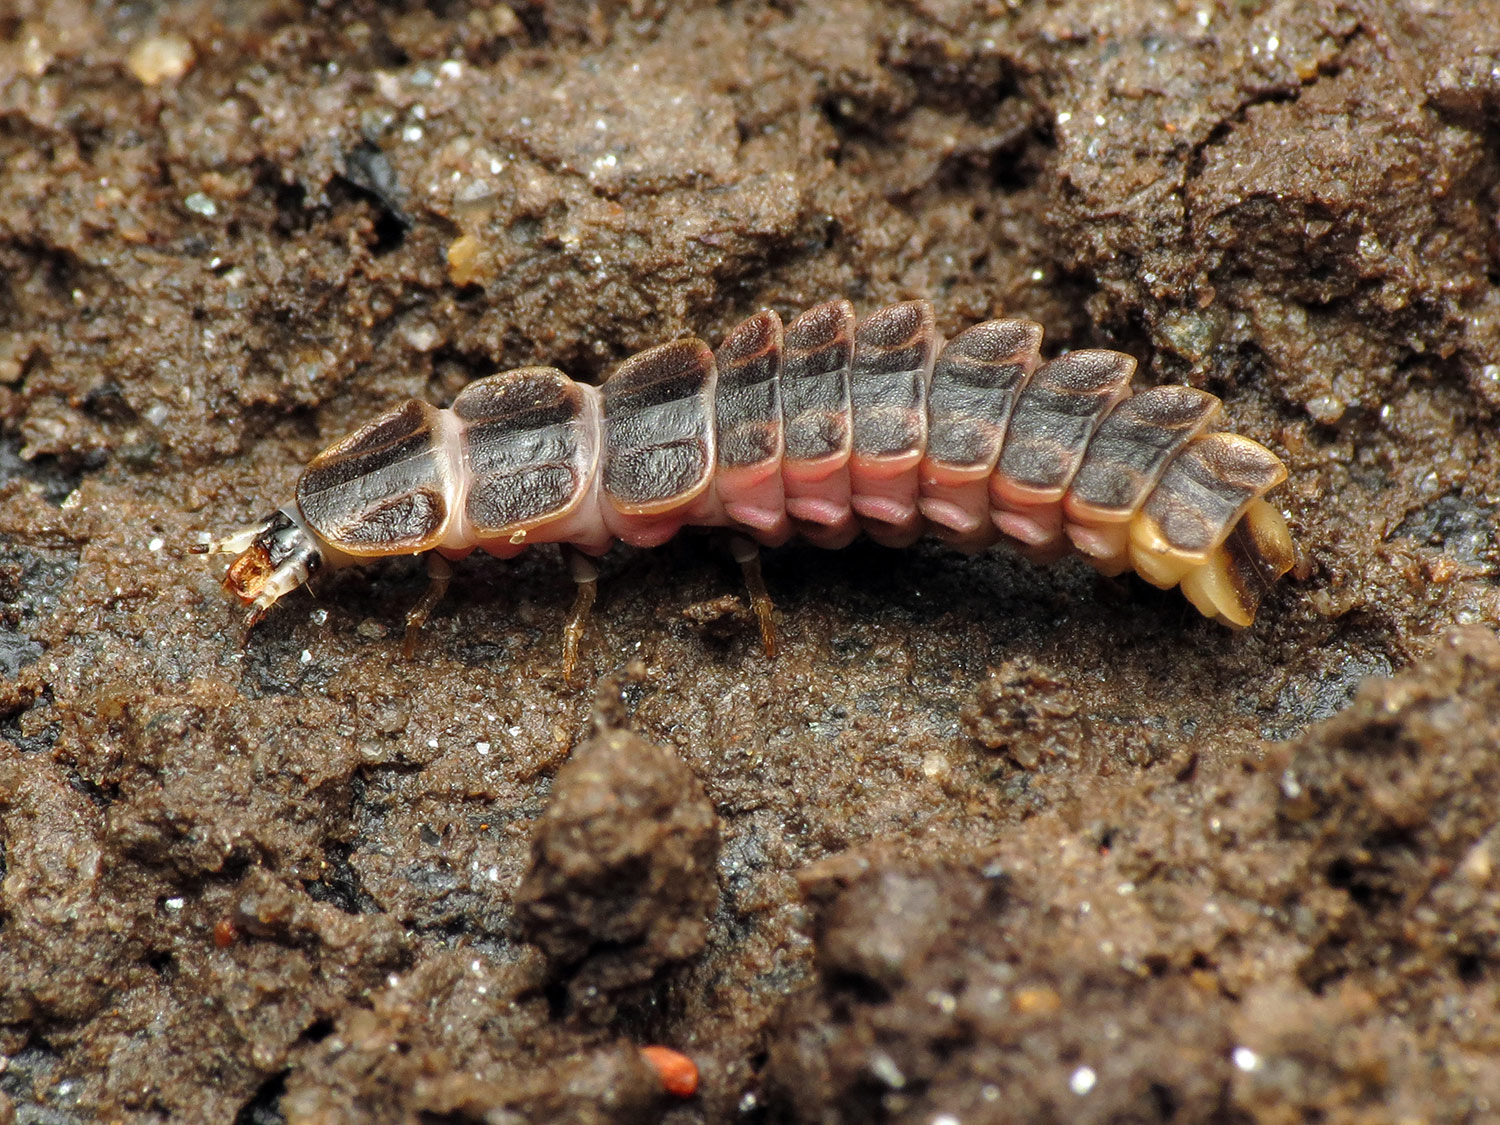 firefly larva in soil